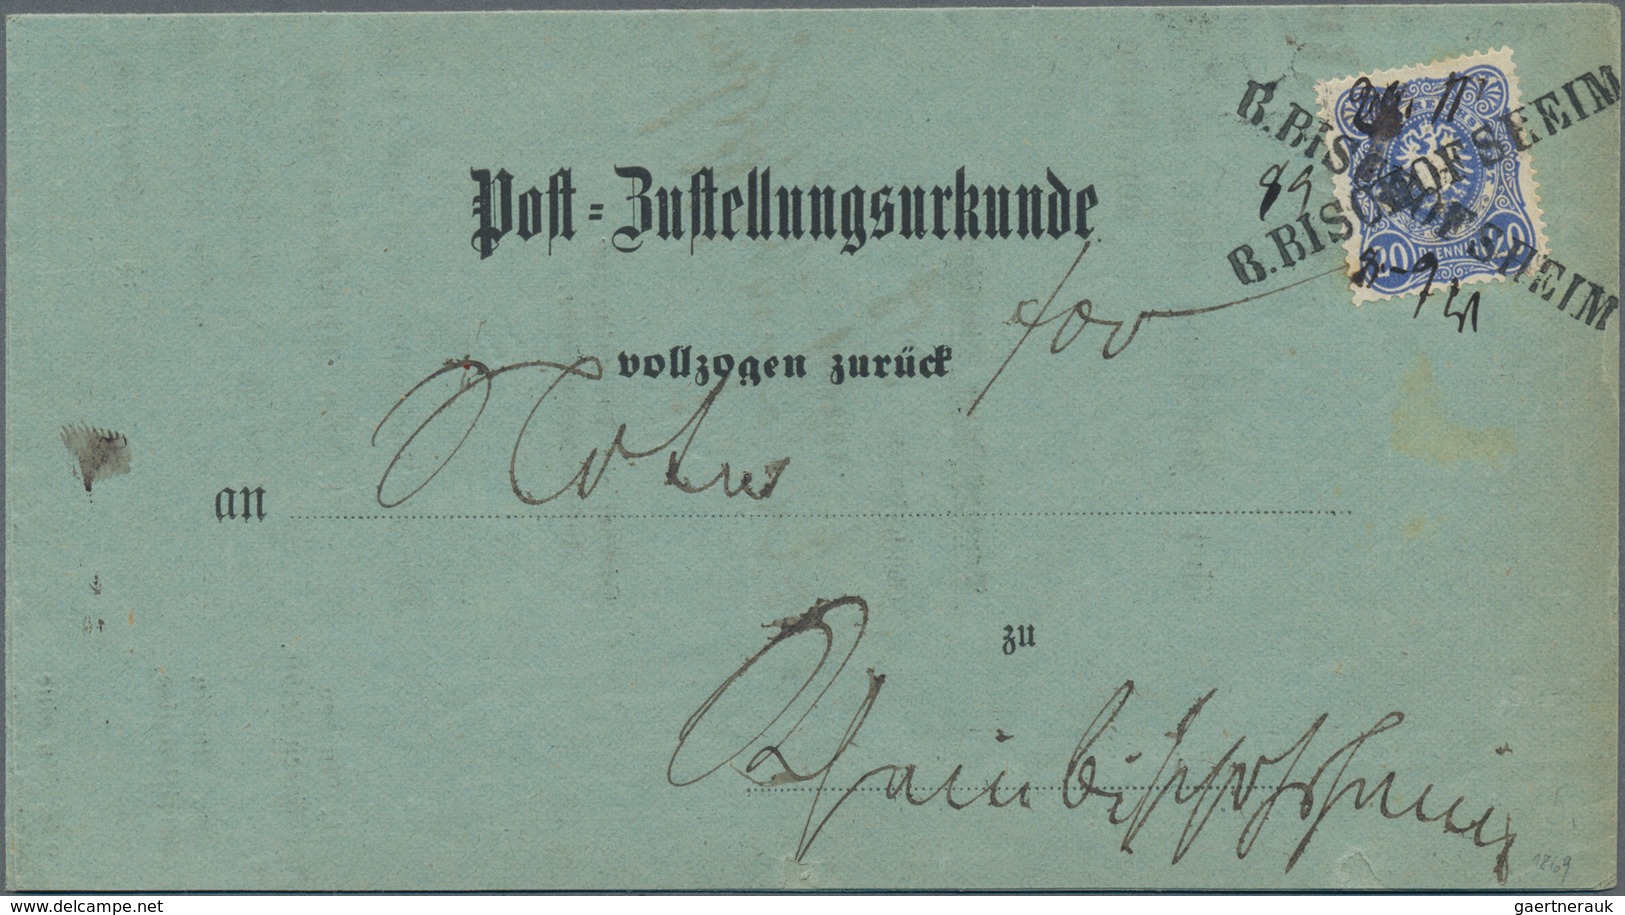 Deutsches Reich - Pfennige: 1875/1899 (ca.), saubere Zusammenstellung von Marken und Belegen mit etl